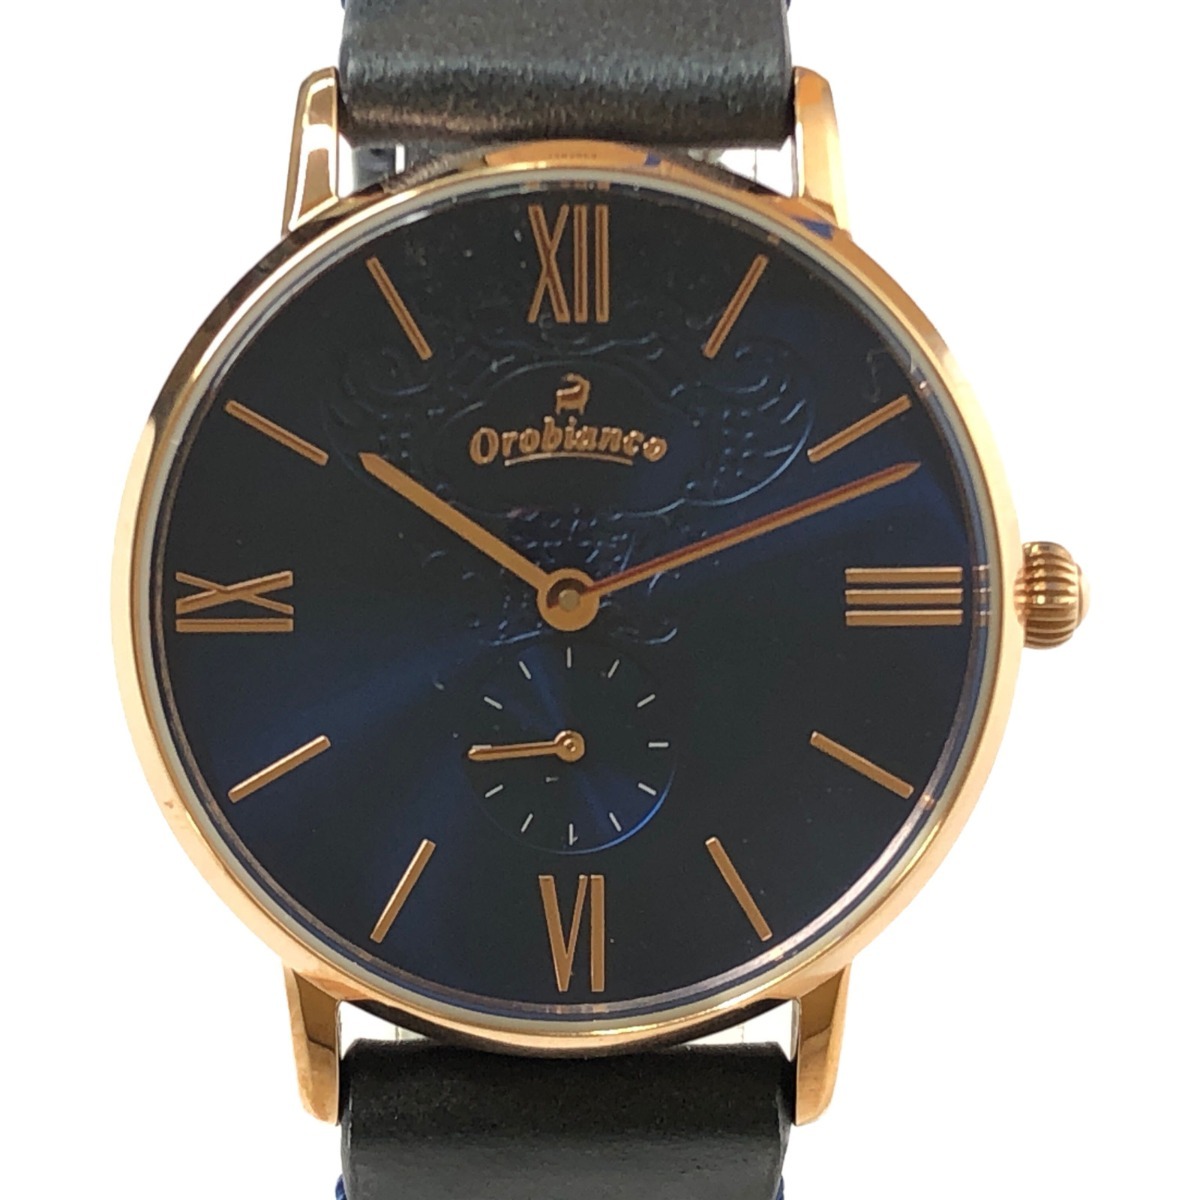 ▼▼ Orobianco オロビアンコ シンパティア SIMMPATIA レディース腕時計 OR0072-5 やや傷や汚れあり